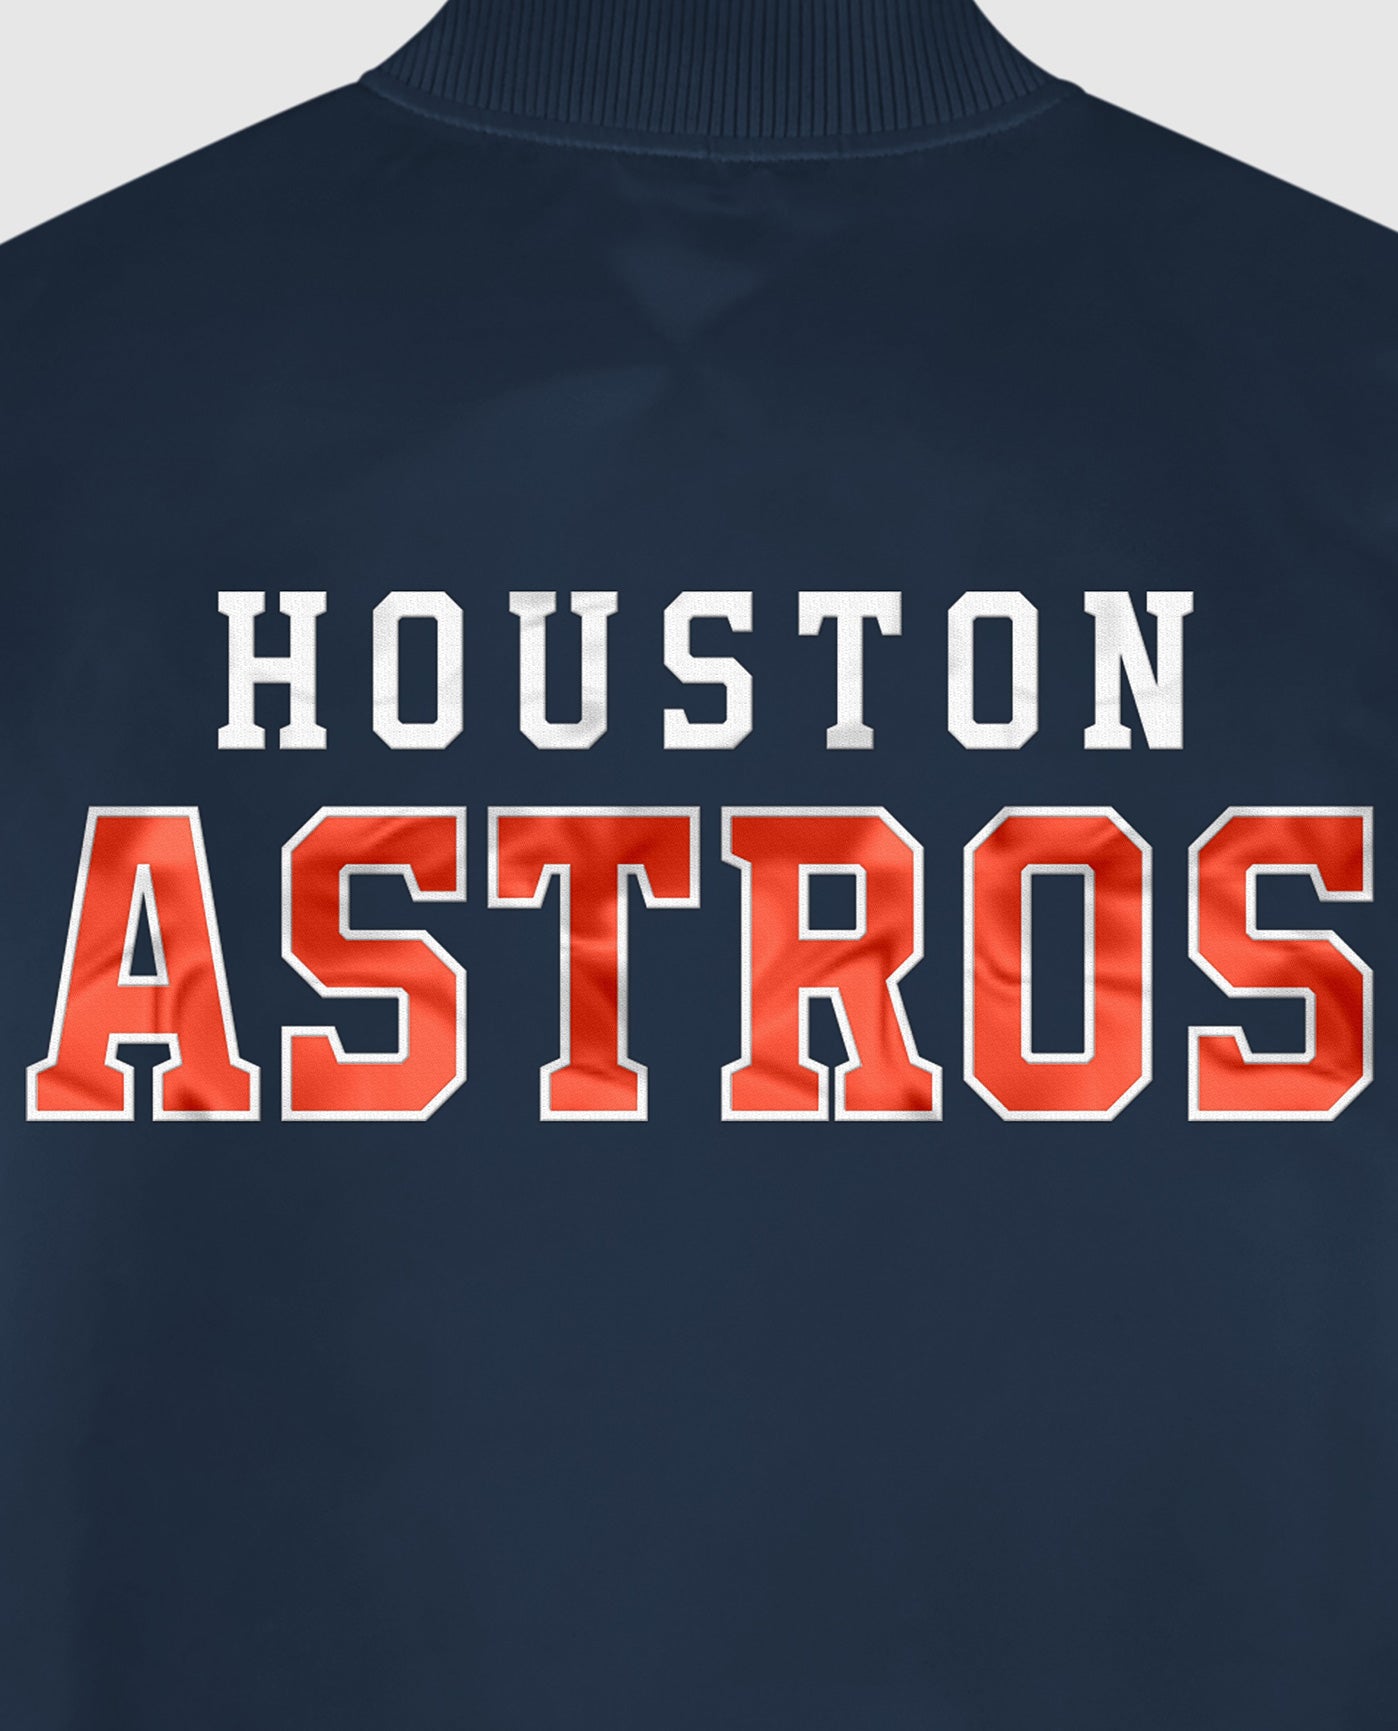 New Era City Icon 17203 Houston Astros - 60426583 - Sneakersnstuff (SNS)